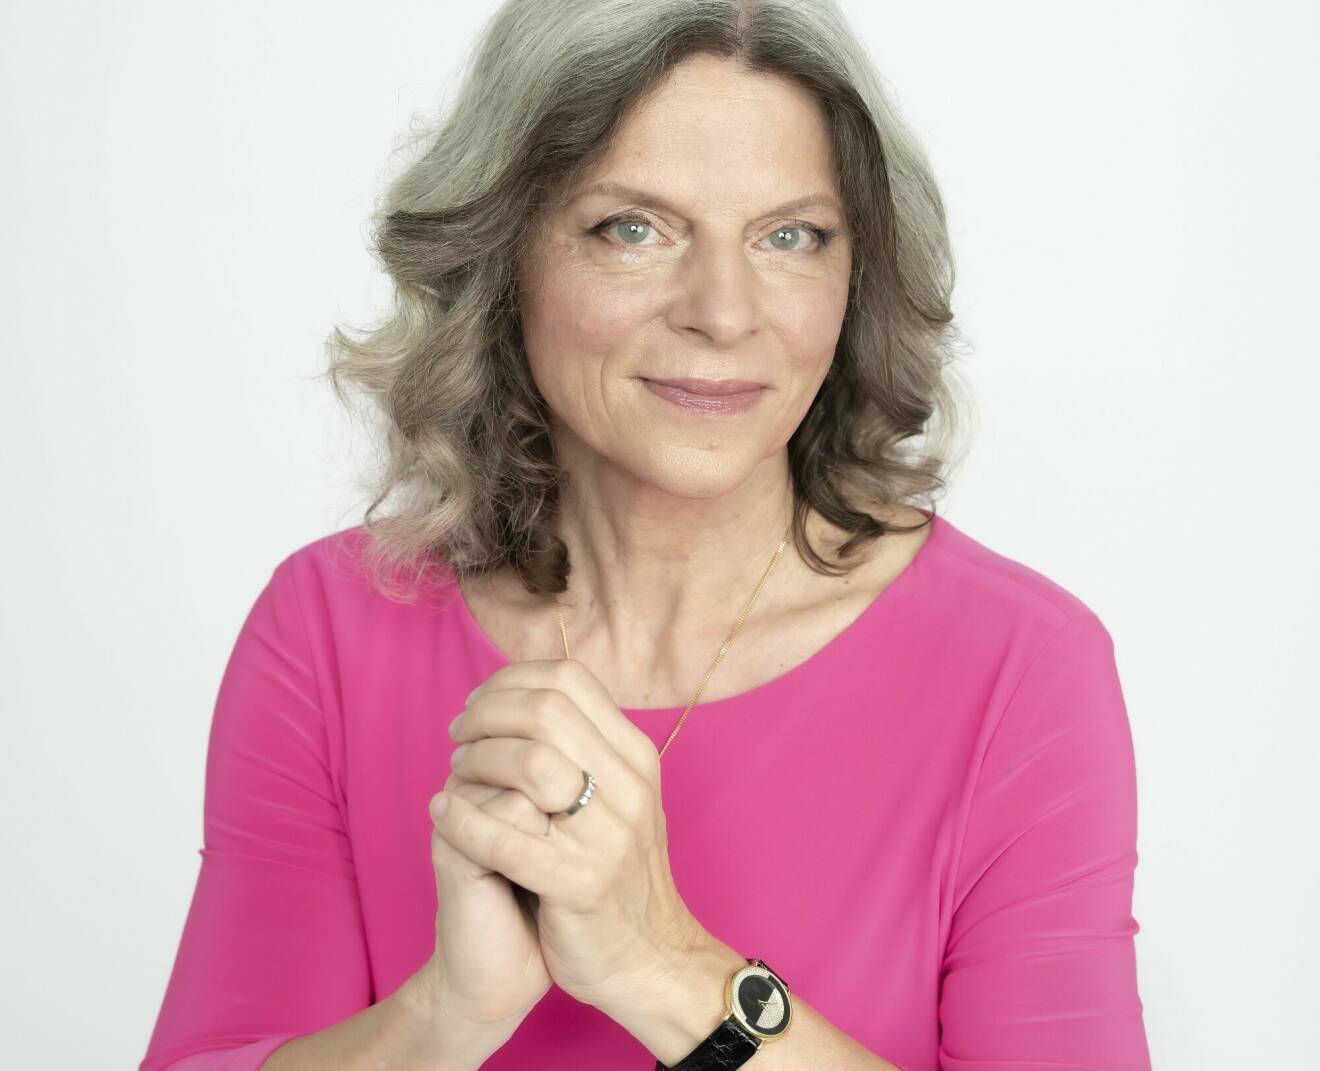 Gynekolog och läkare Hilde Löfqvist